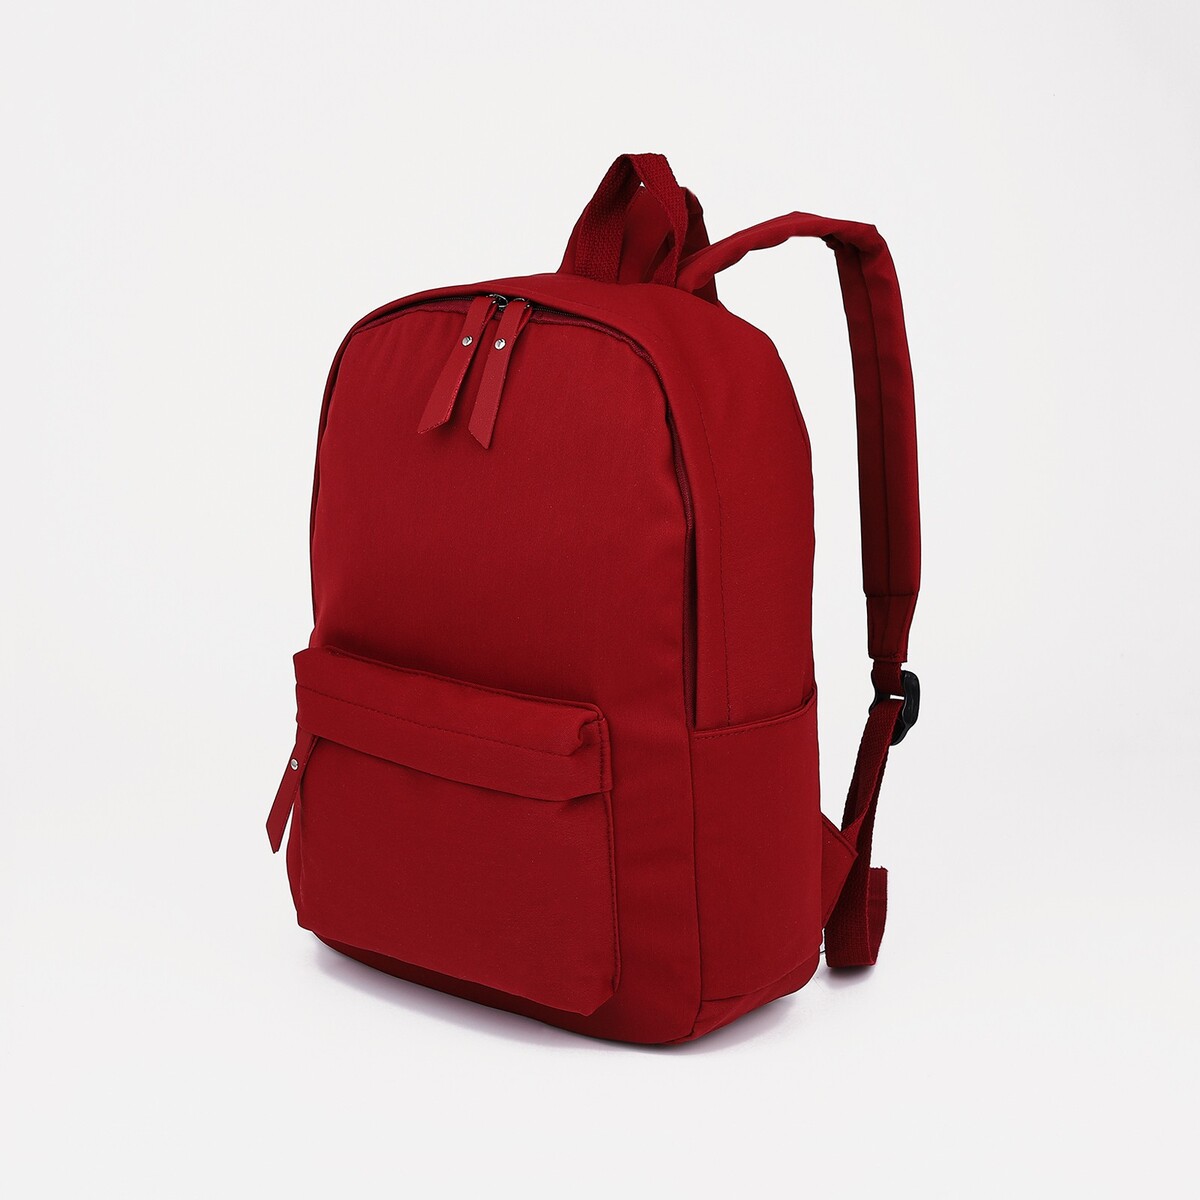 Рюкзак молодежный из текстиля, 4 кармана, цвет бордовый pixel bag рюкзак с led дисплеем pixel max red line бордовый